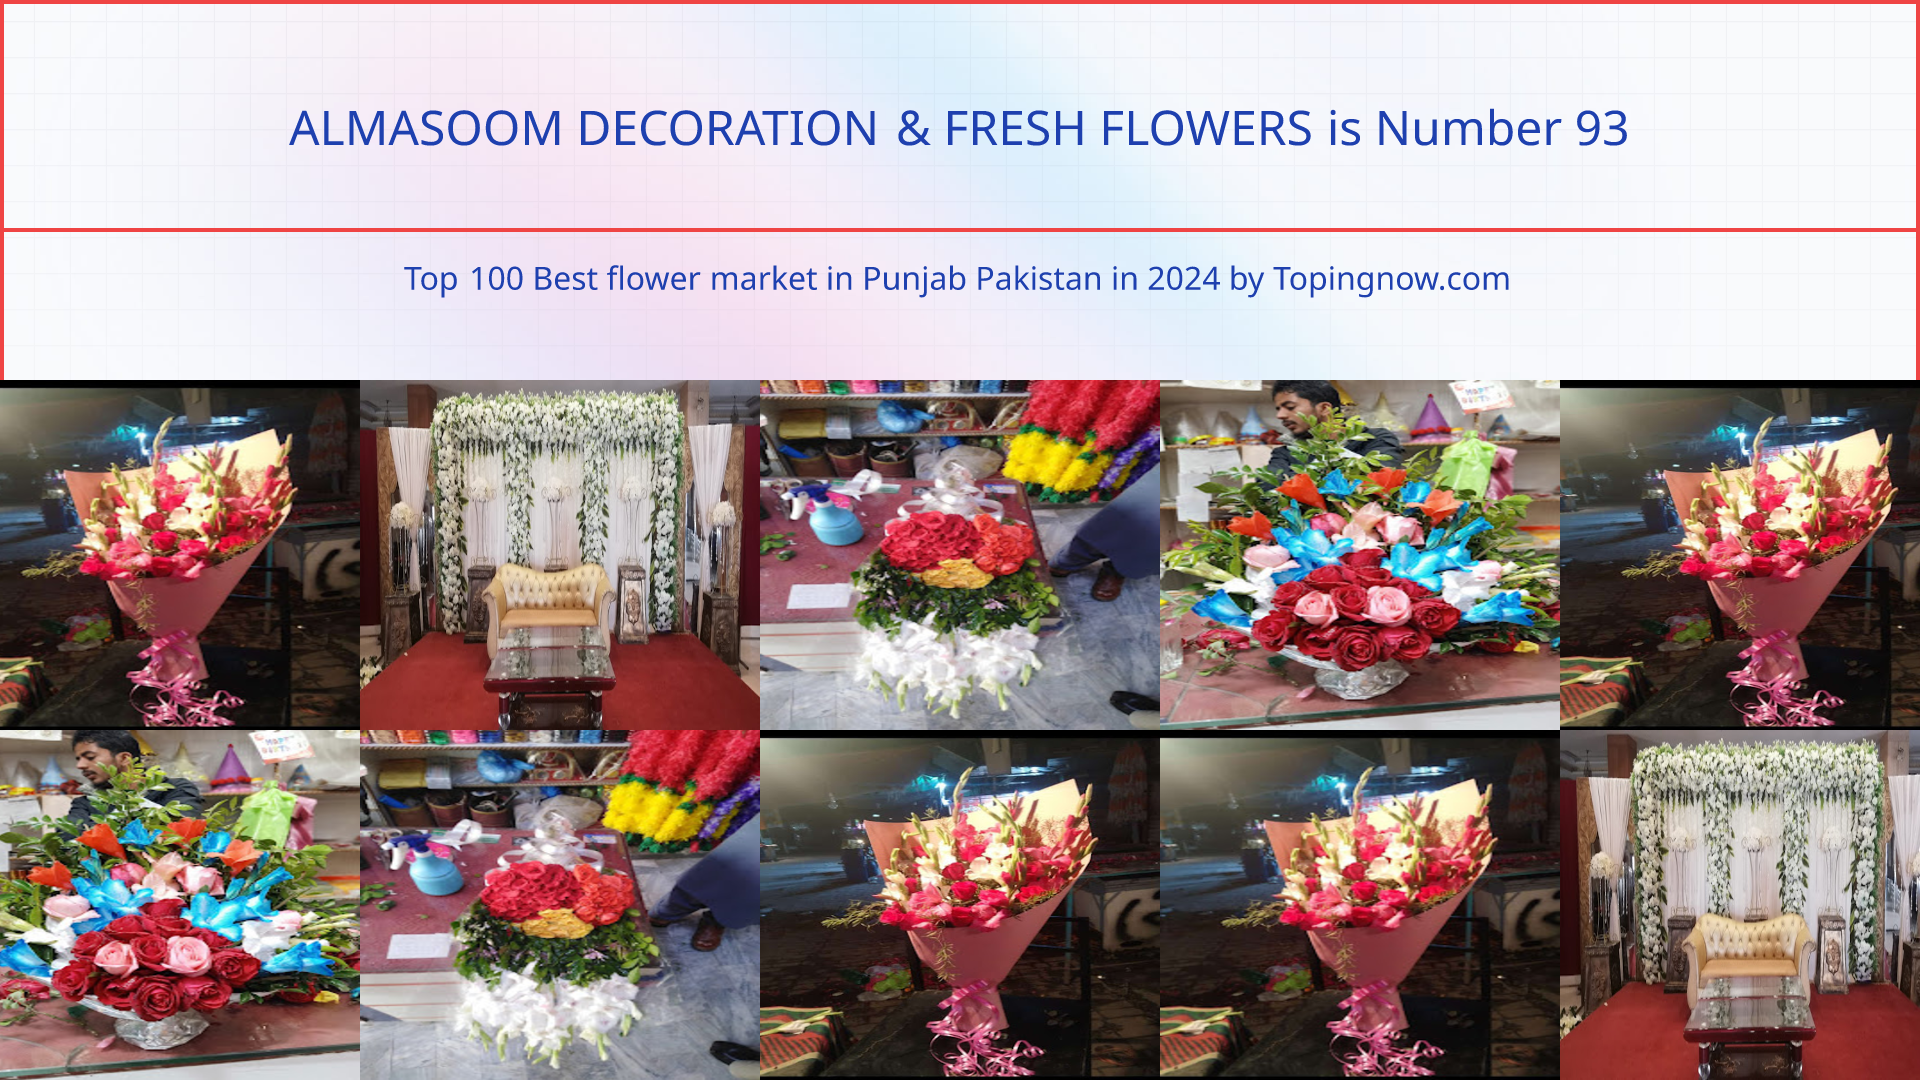 ALMASOOM DECORATION & FRESH FLOWERS: Top 100 Best flower market in Punjab Pakistan in 2024